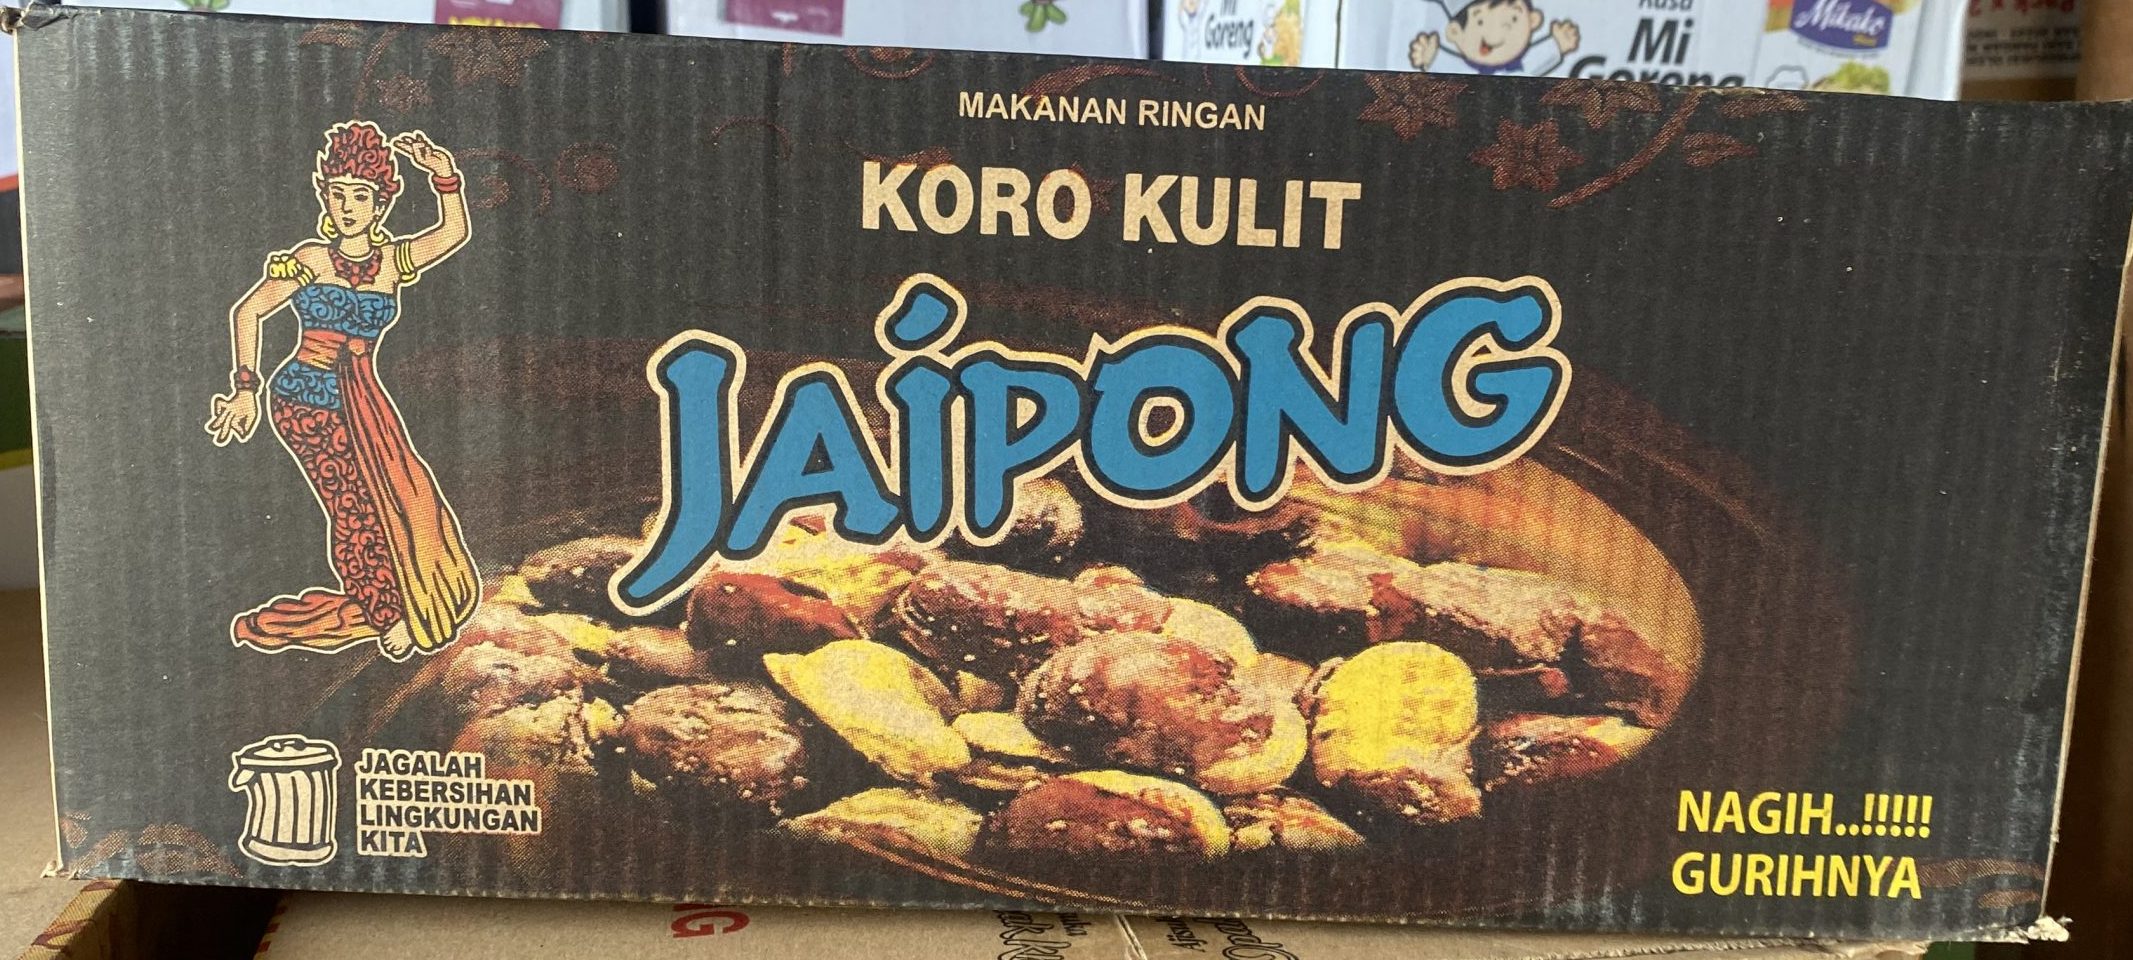 Snack Jaipong Koro Kulit